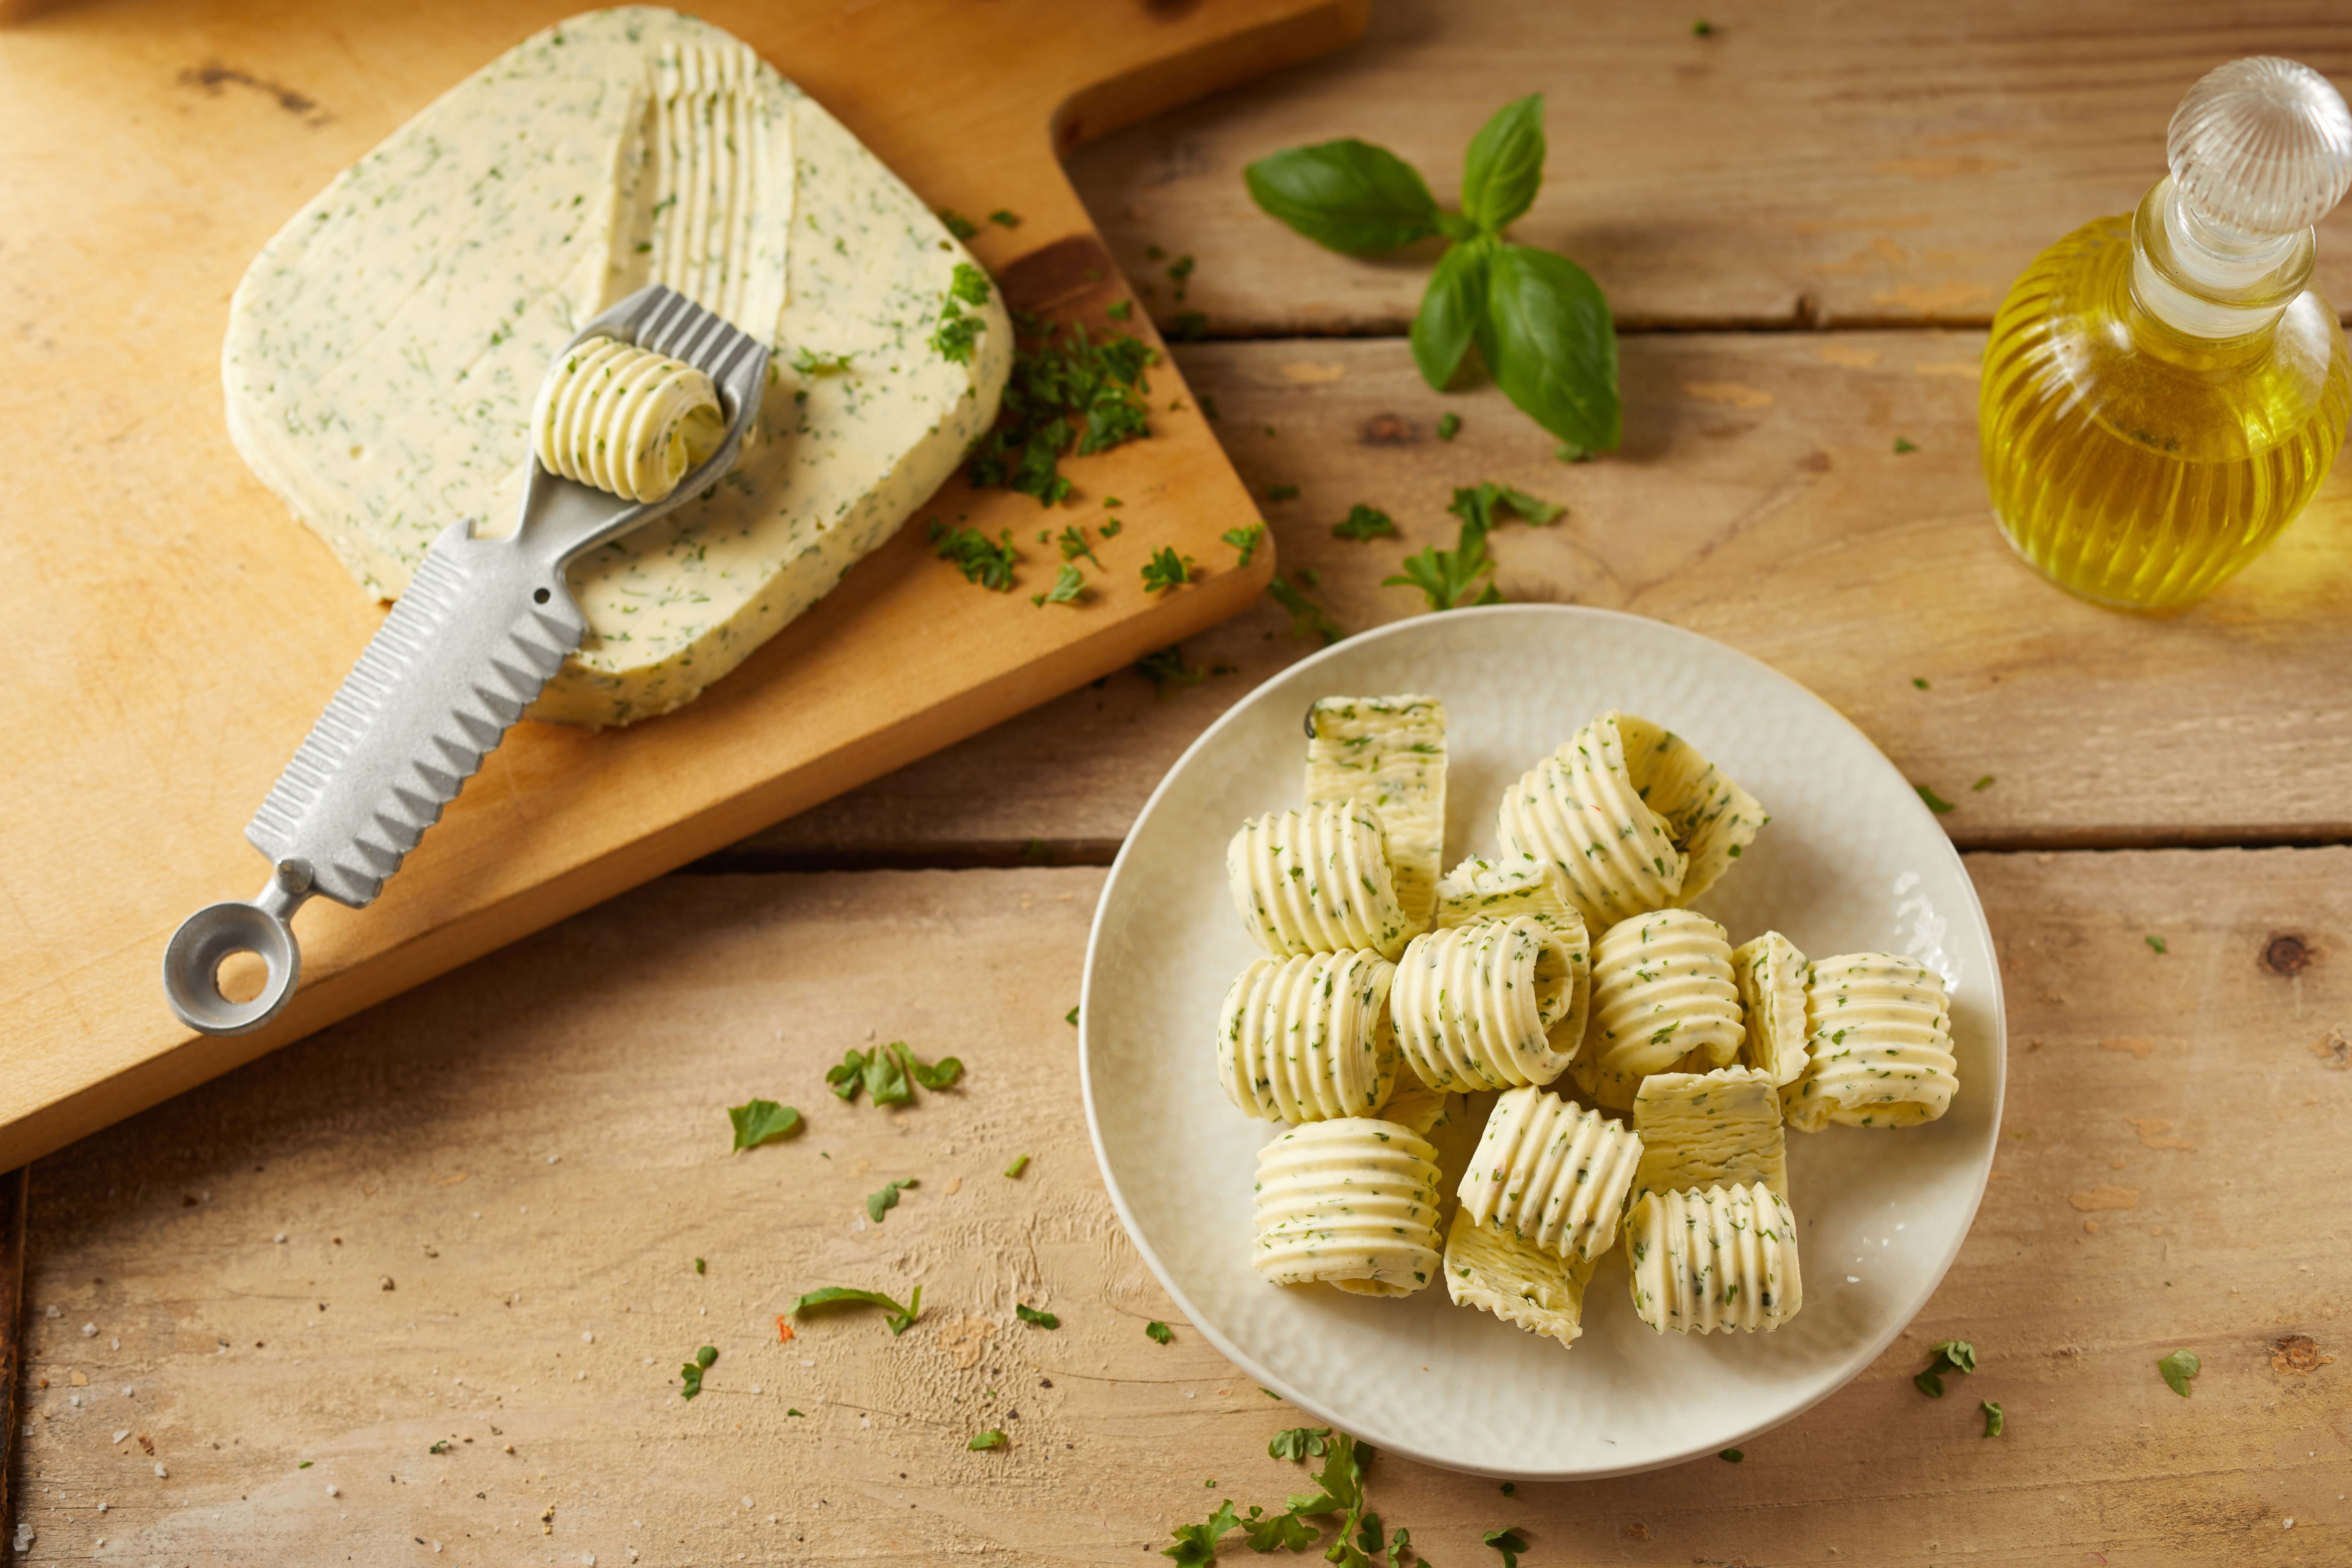 Un rizador de mantequilla con mantequilla rizada. | Fuente: Shutterstock